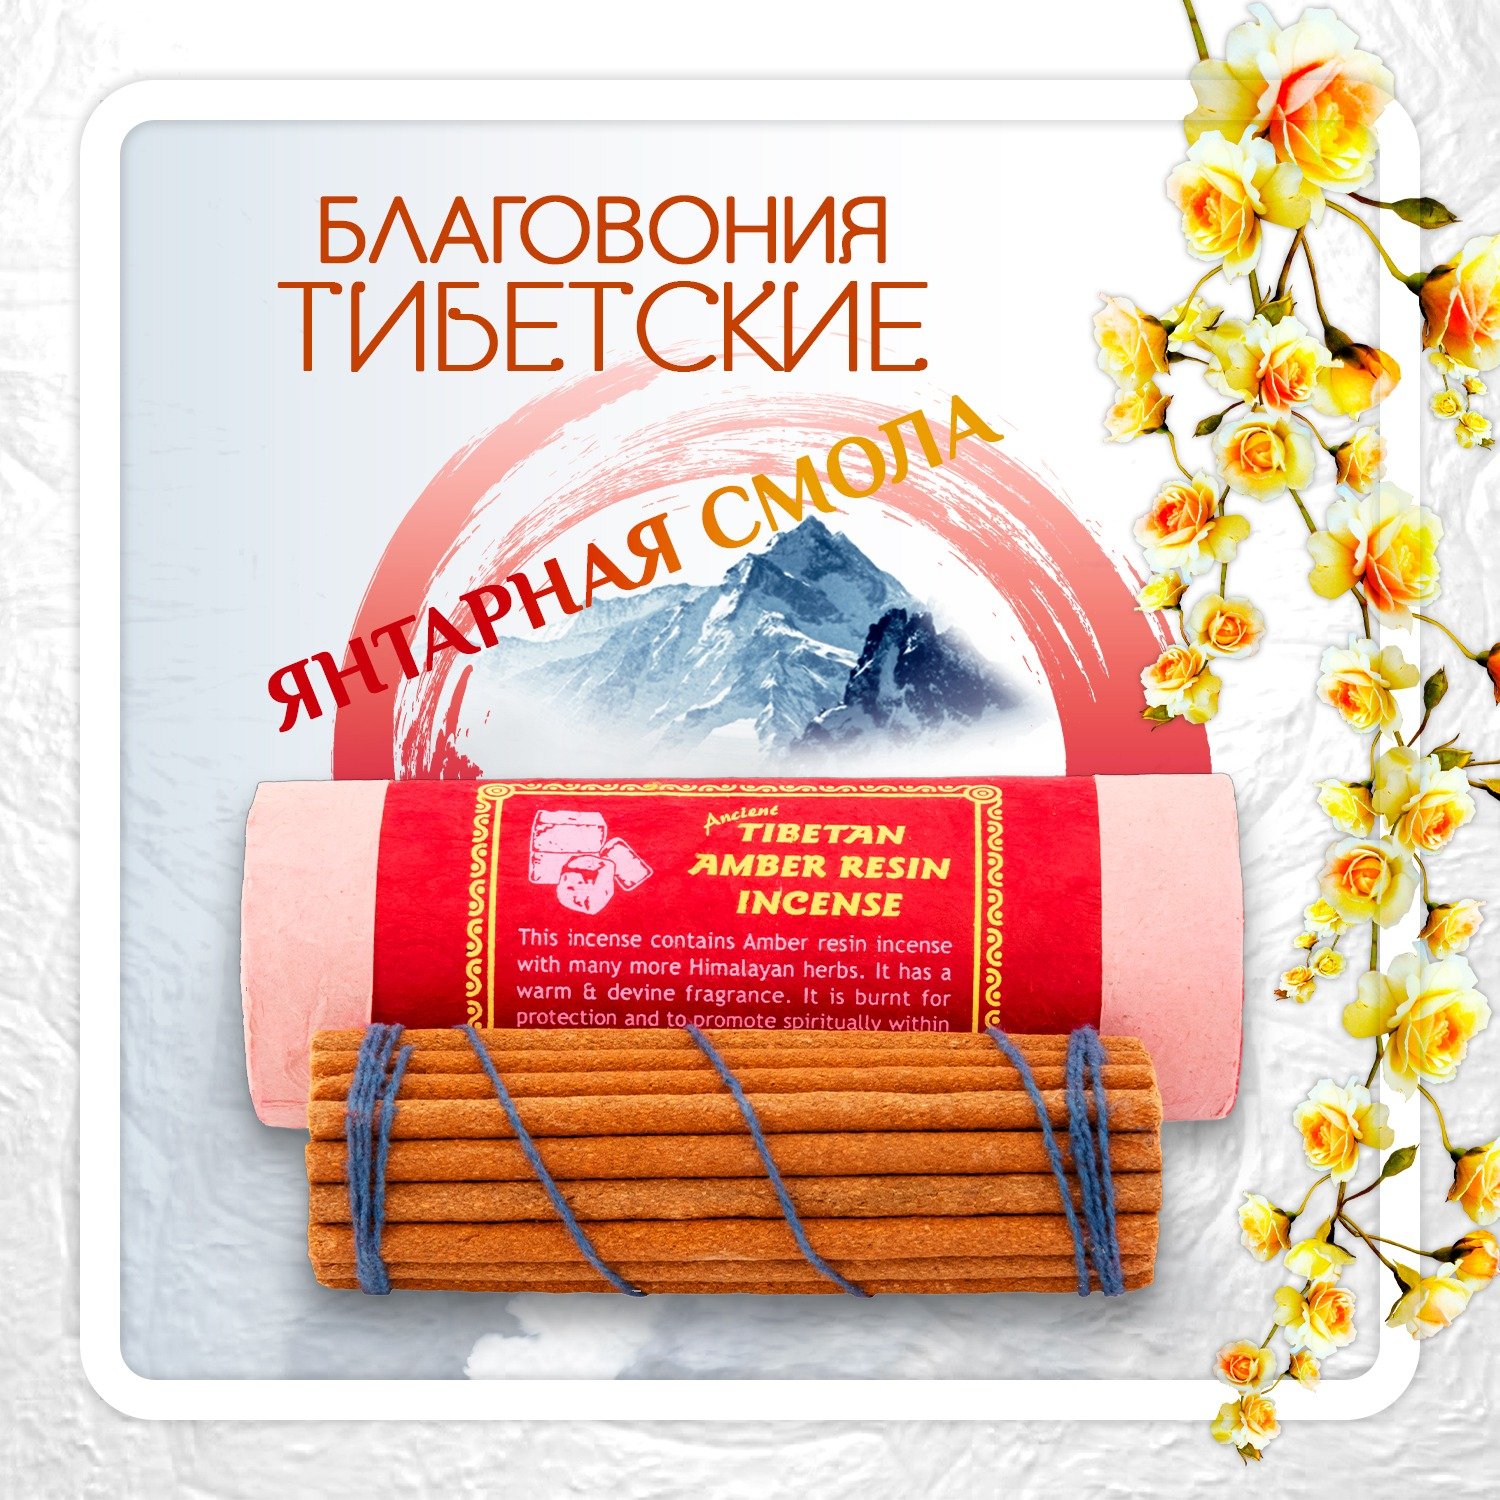 Благовоние Tibetan Amber Resin Incense / янтарная смола, 30 палочек по 11 см. 